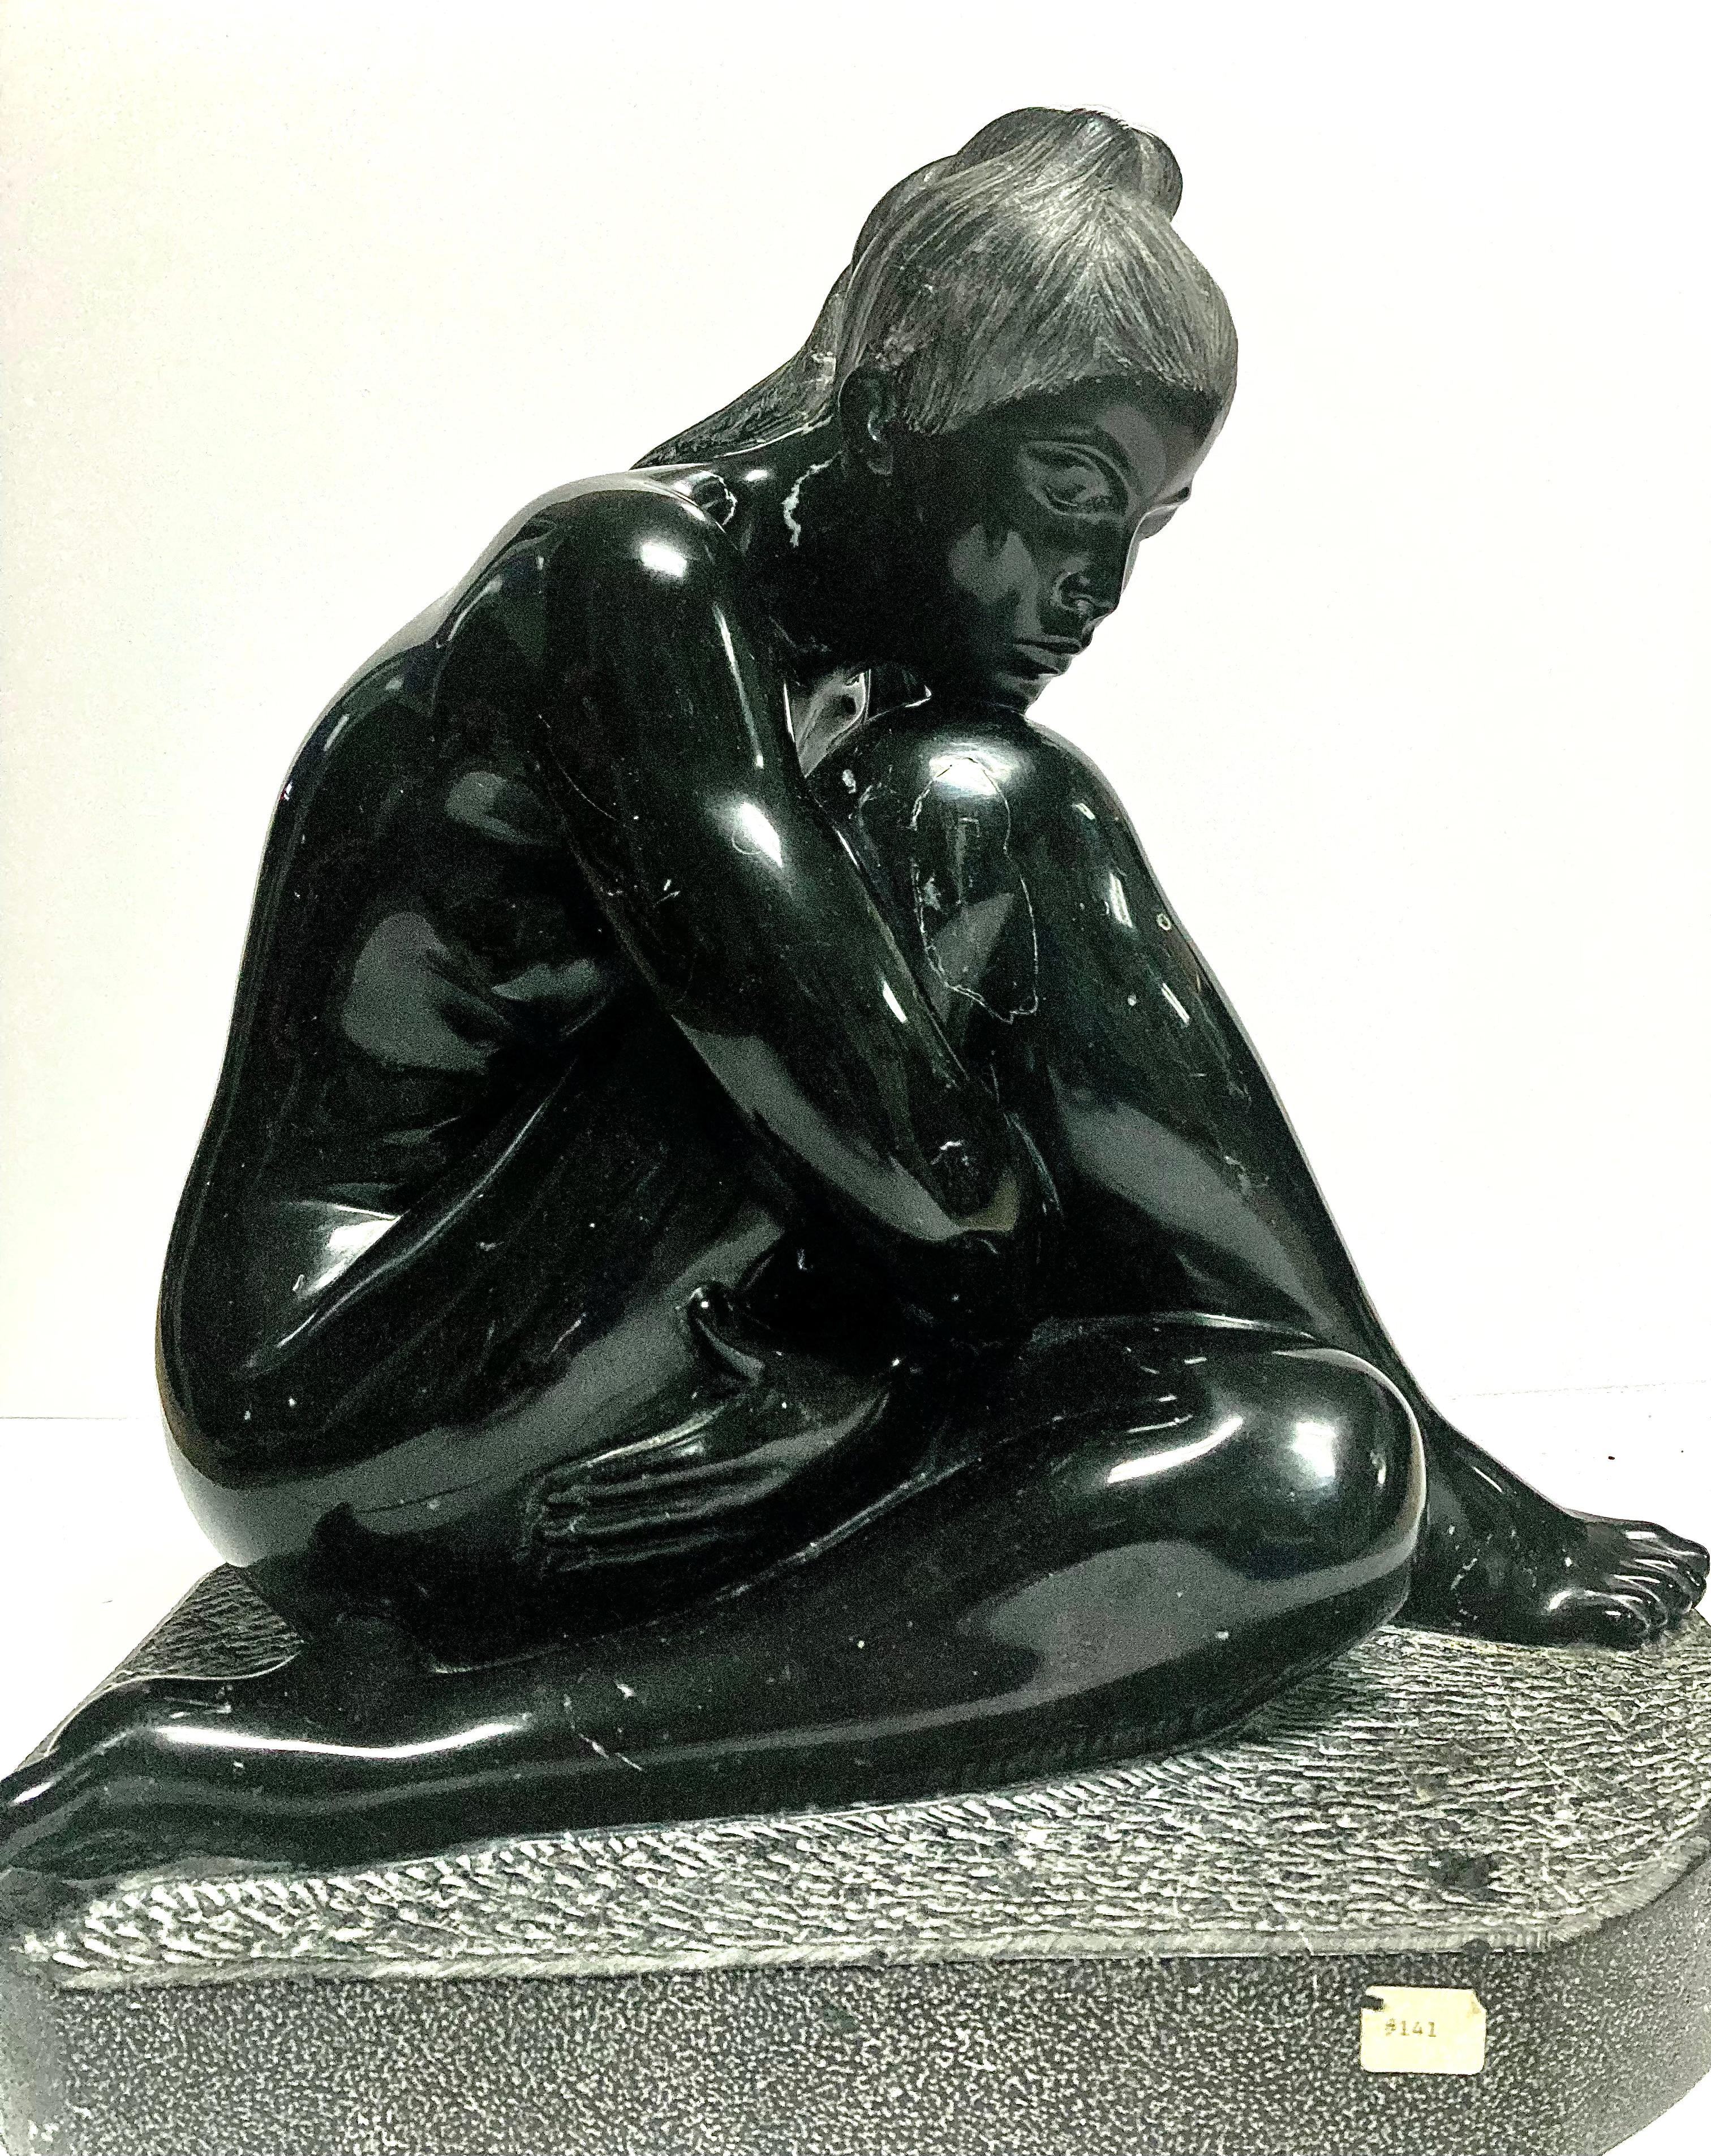 Unbenannt – Sculpture von Felipe Castañeda